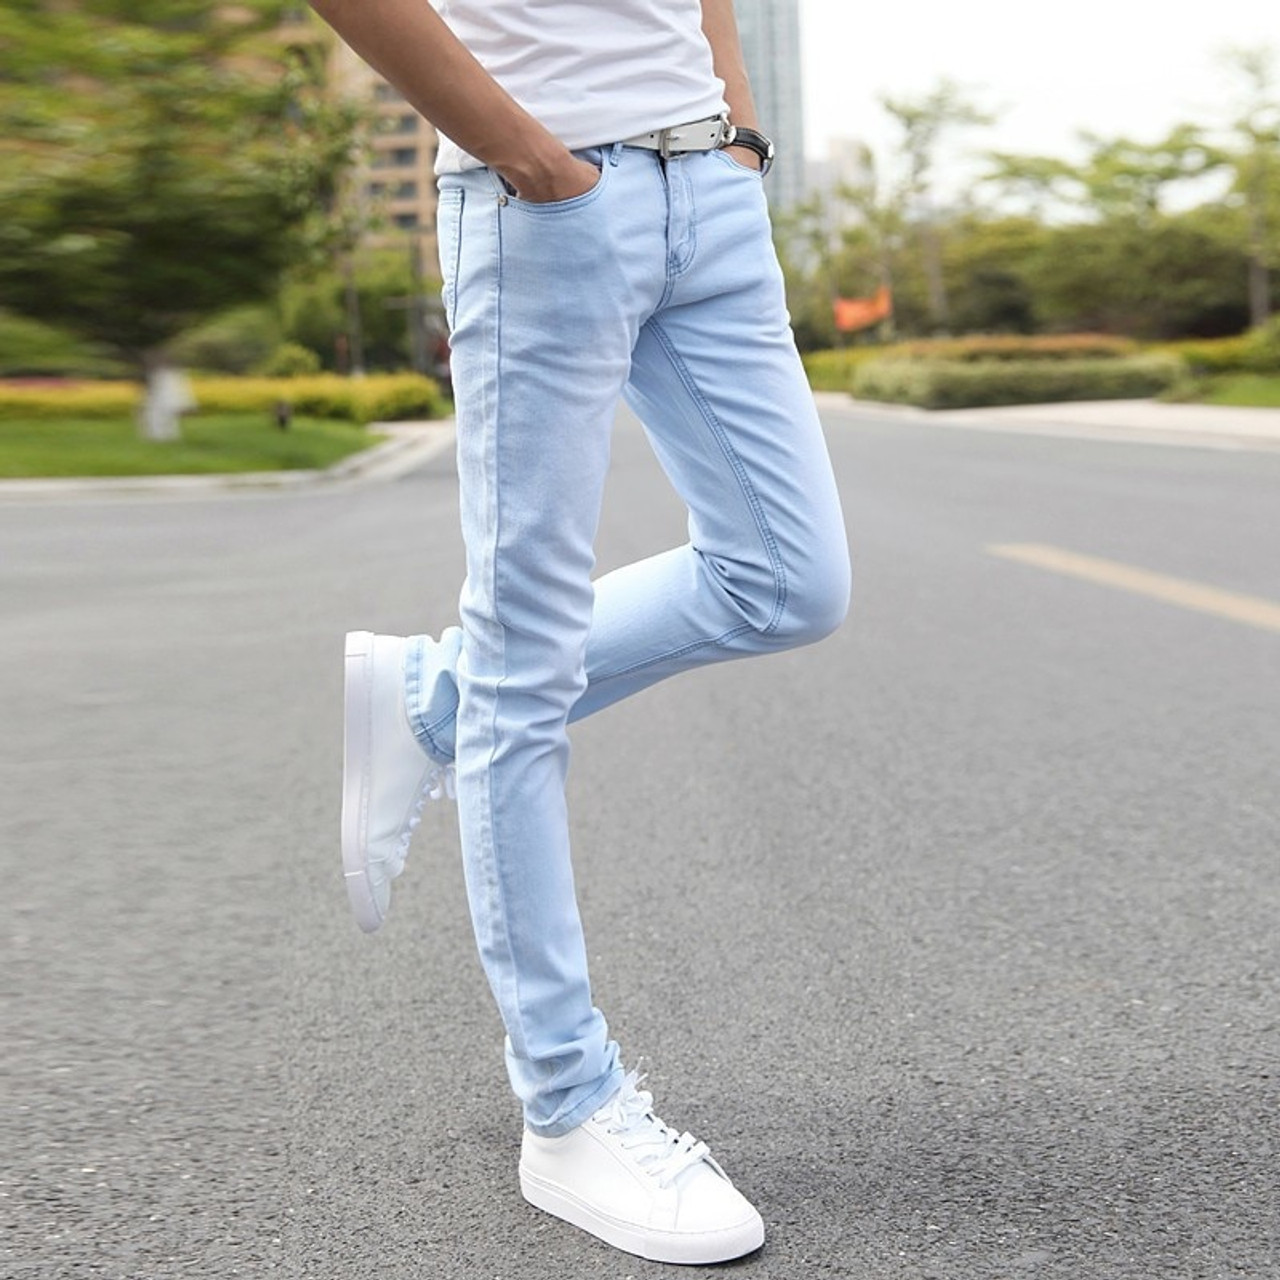 Denim Cargo Jogger Style Jeans Pant For Men & Boys - Stark mart